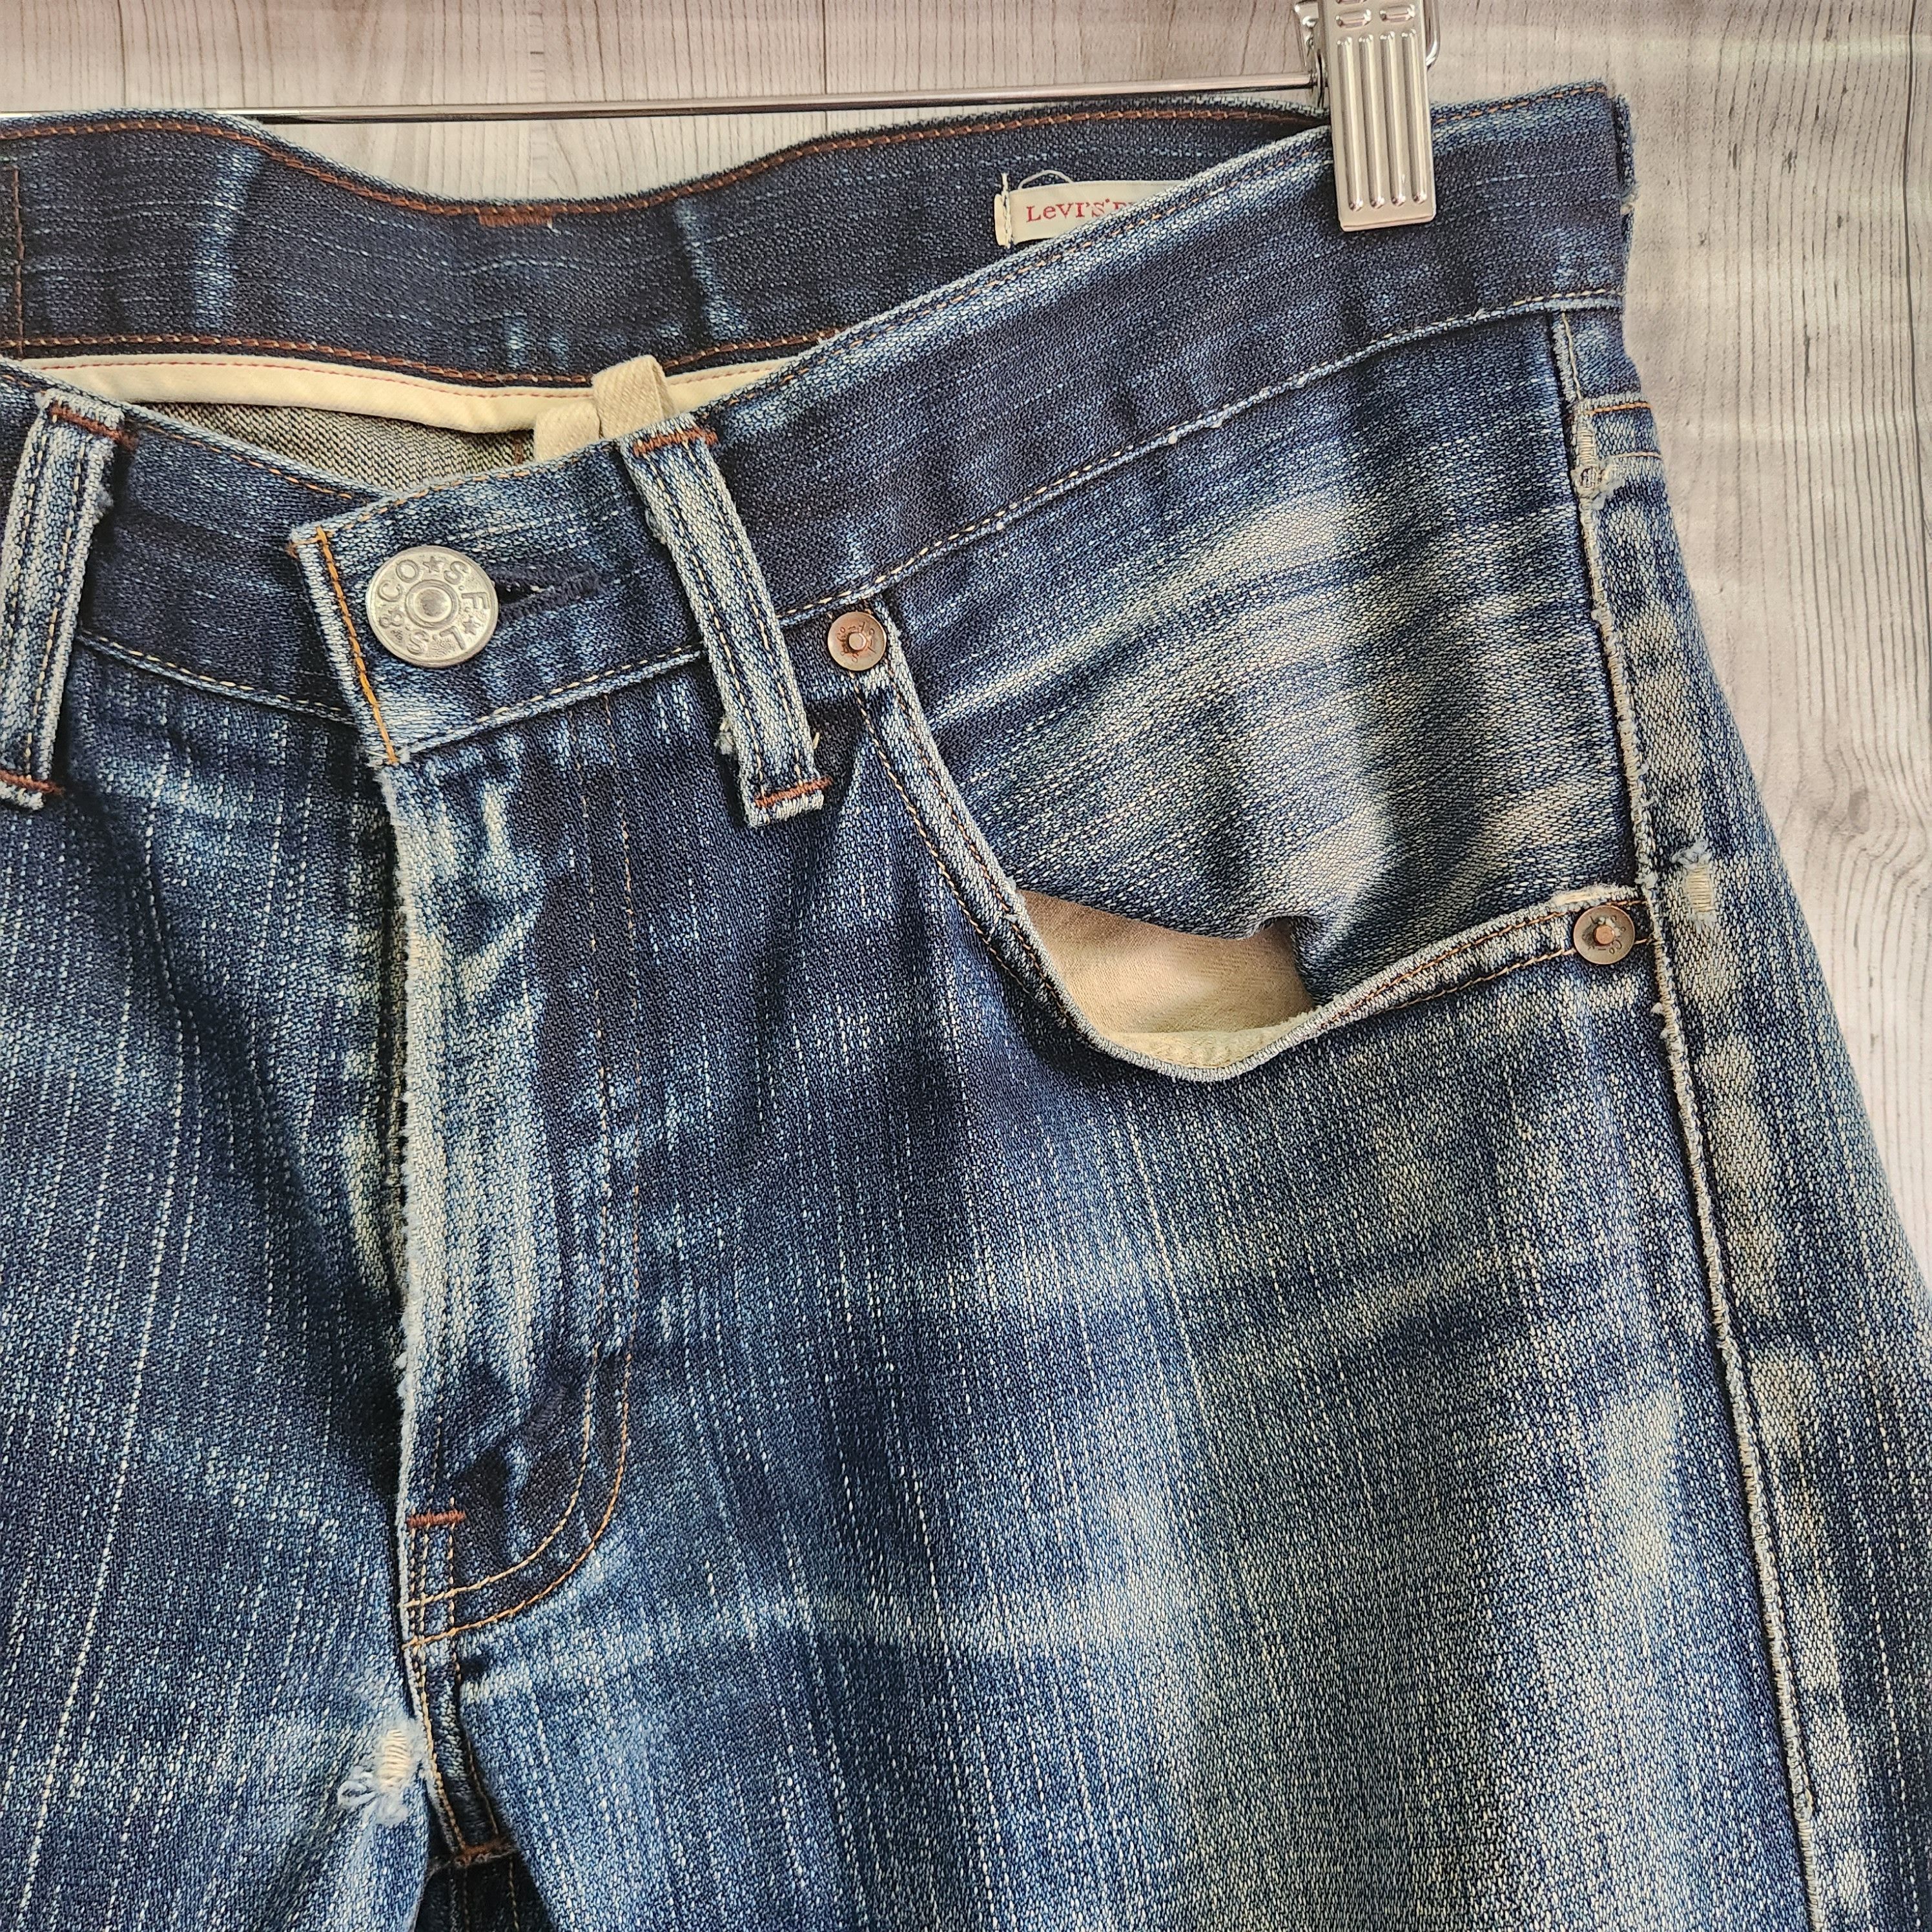 Levis 505 Premium Distressed Denim Jeans - 18